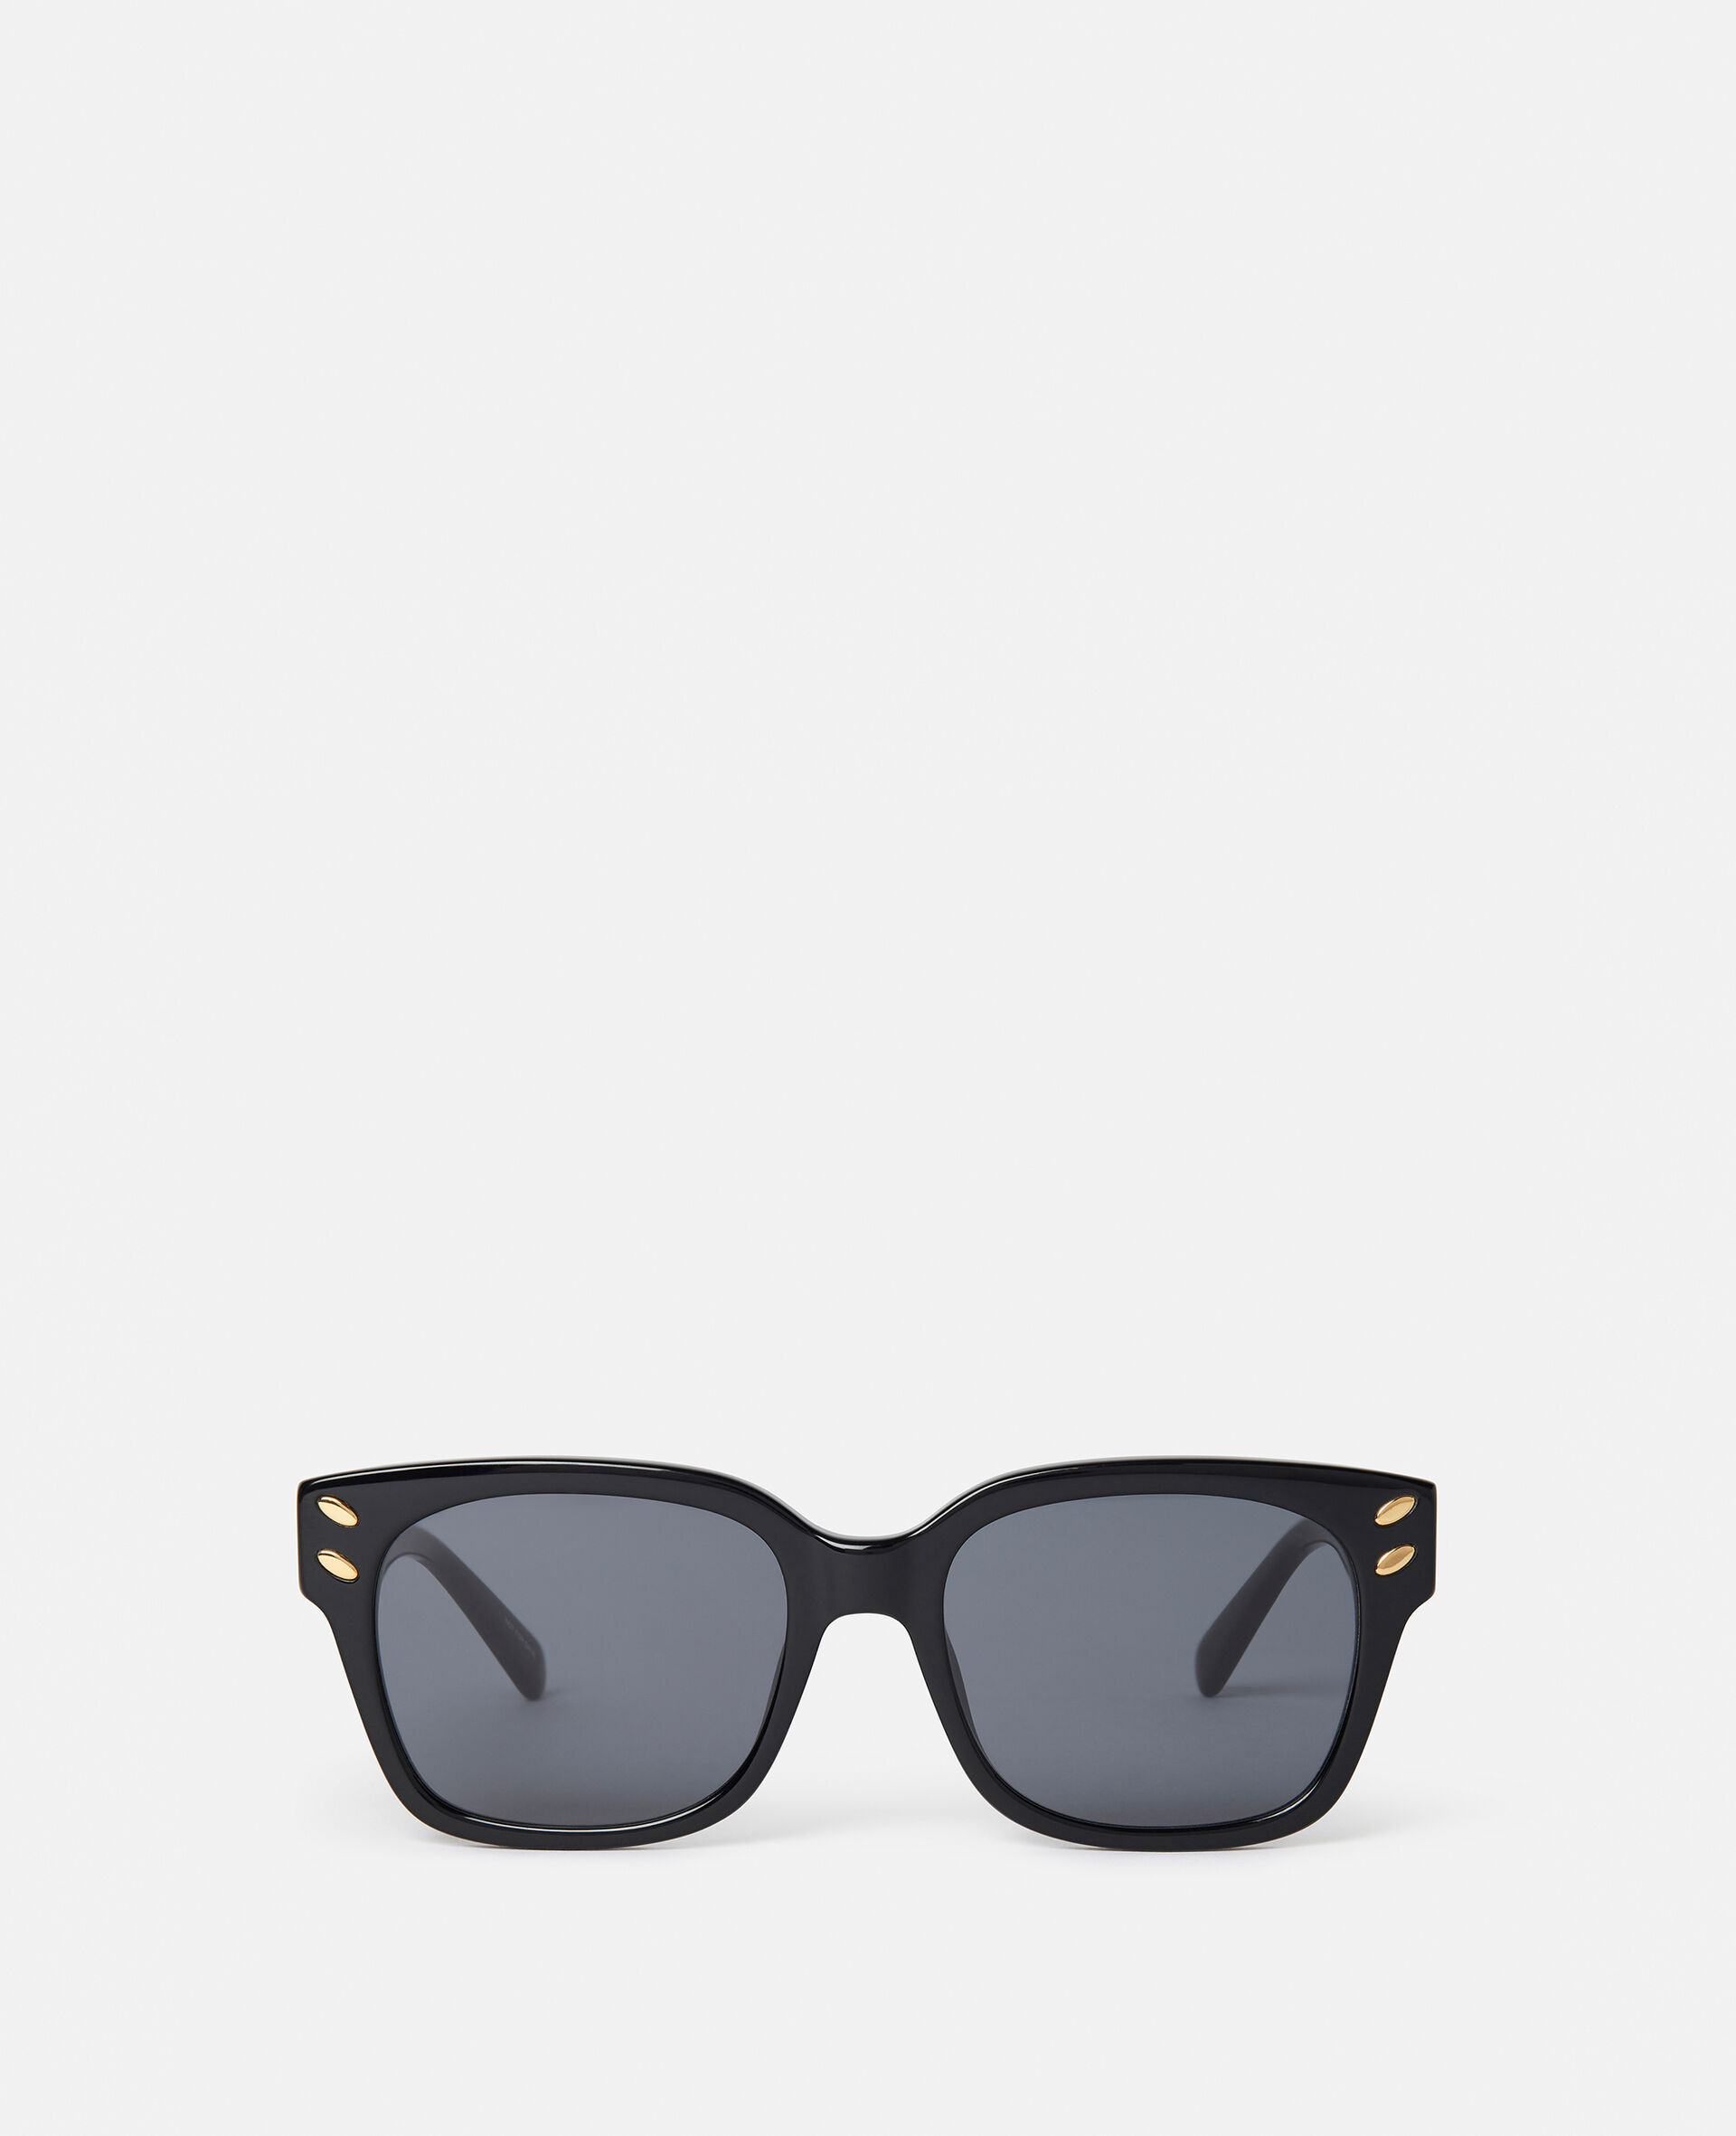 Geometric Sunglasses-Black-large image number 0